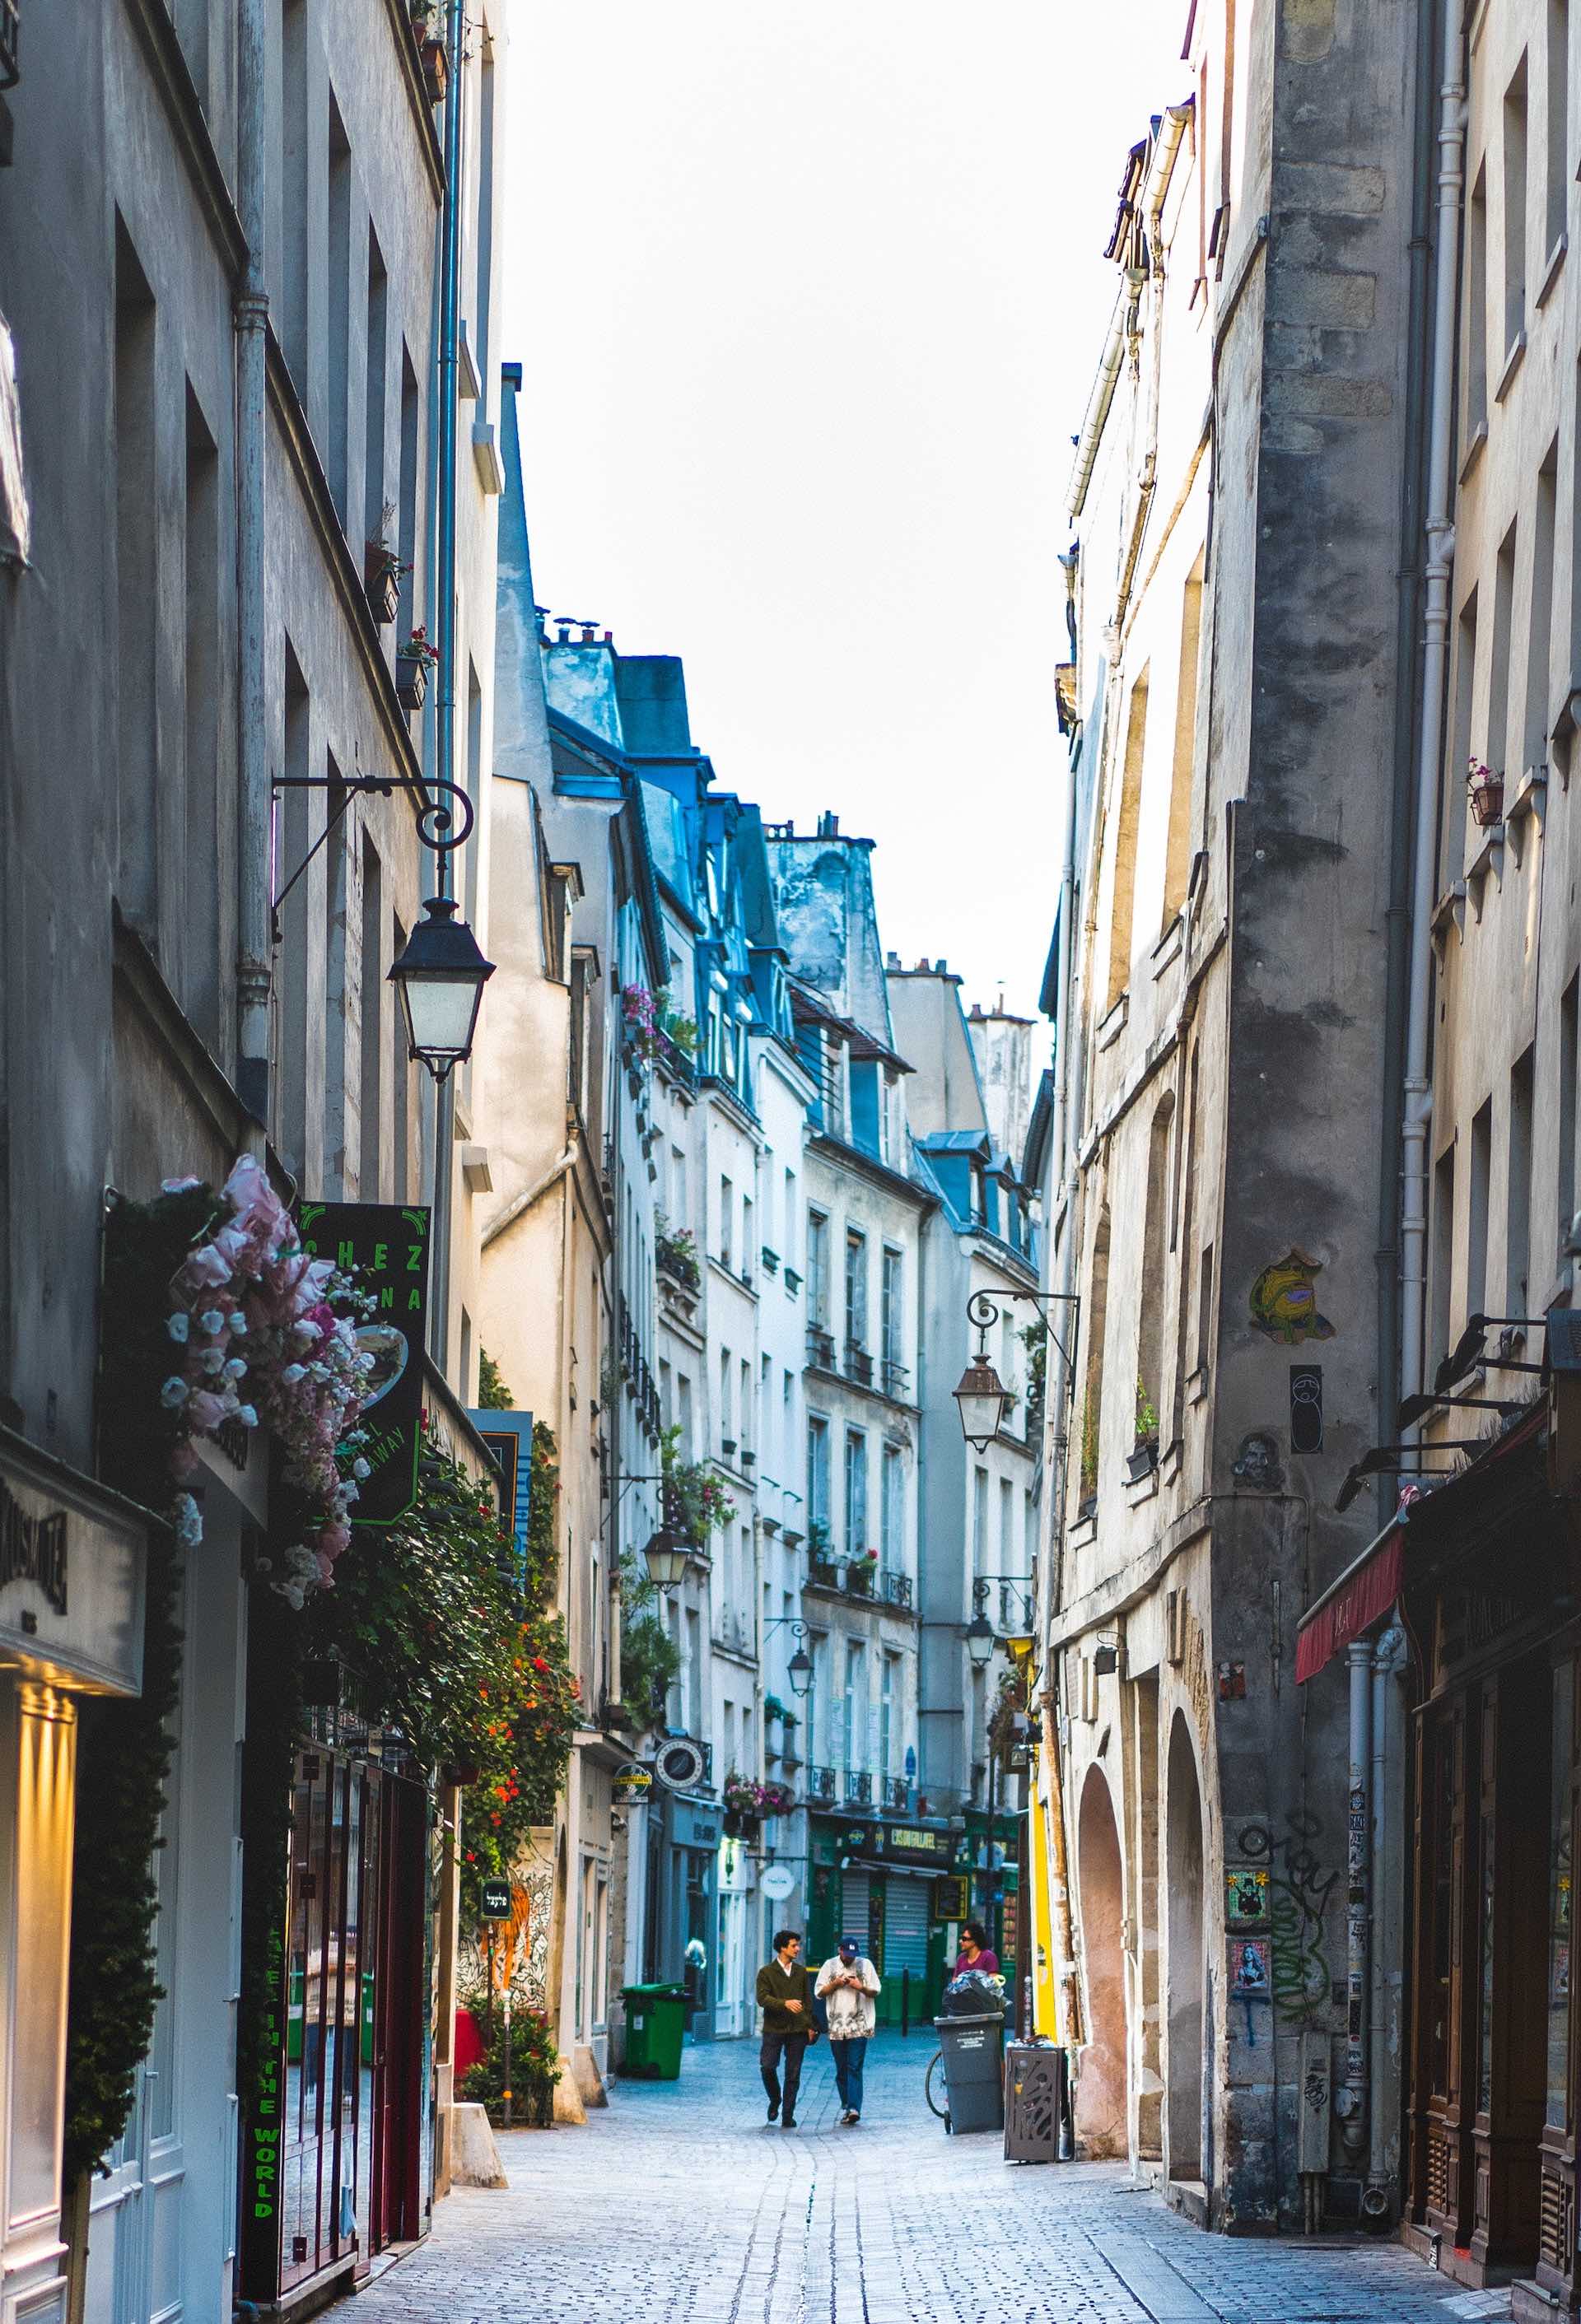 Where to stay in Paris - Le Marais